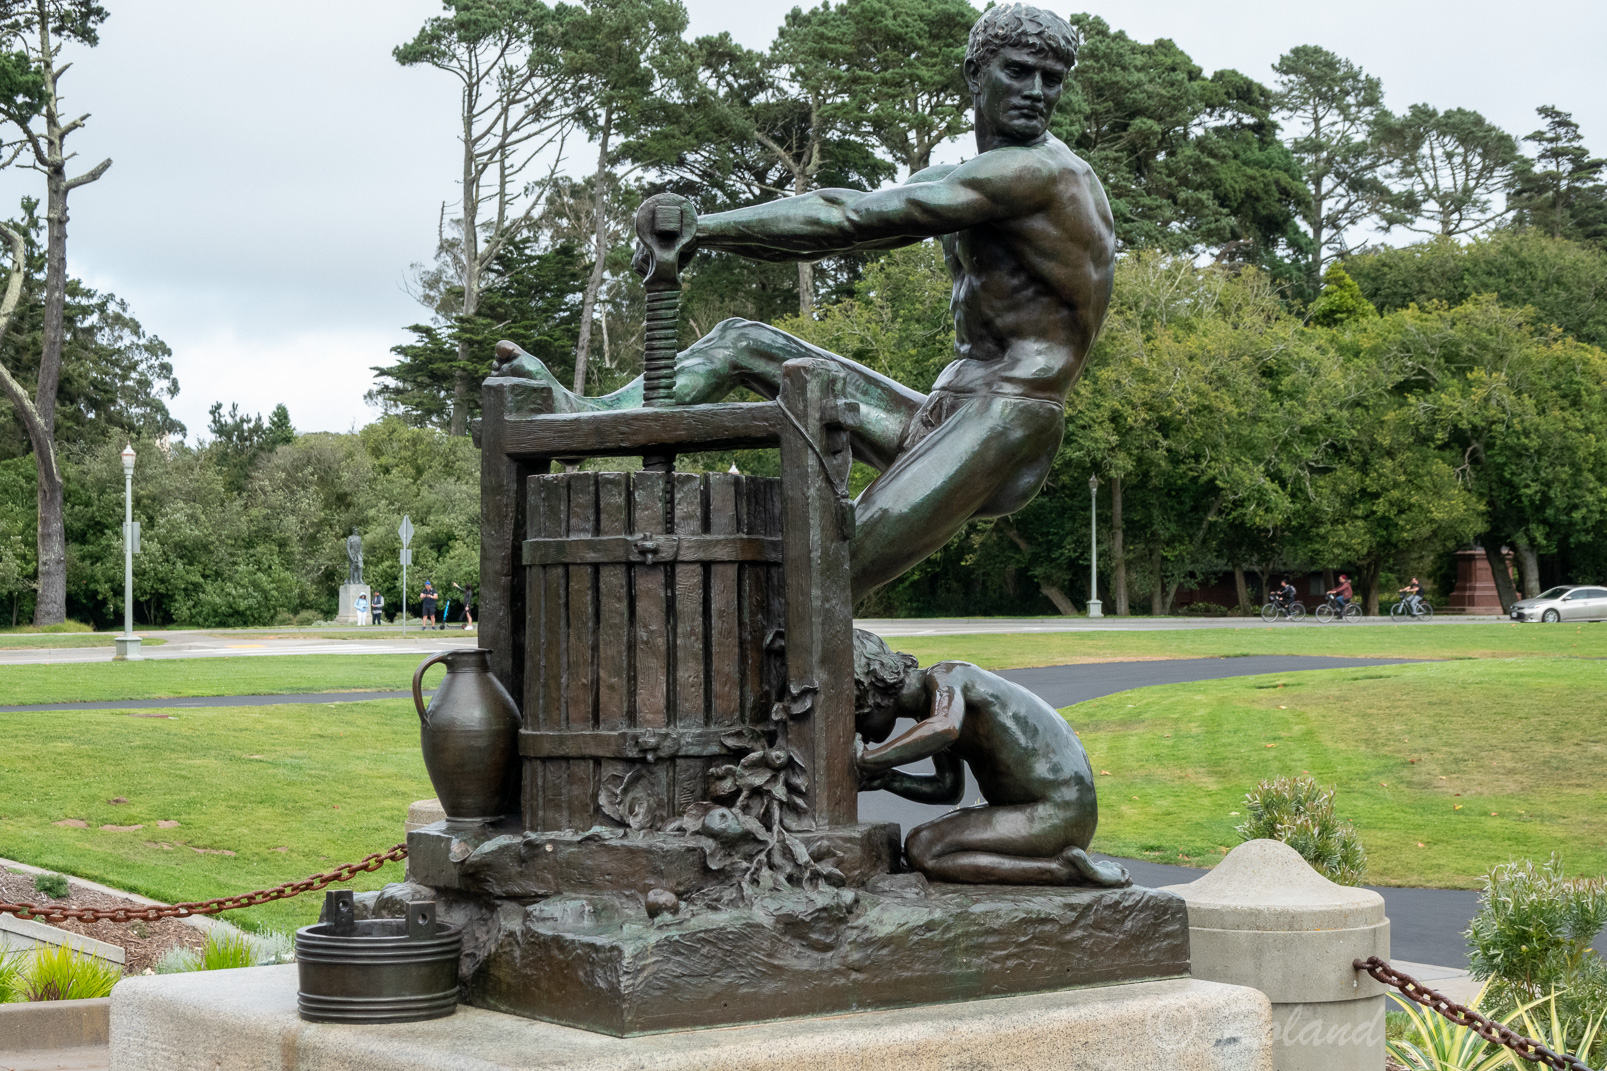 A proximité du musée, le parc est parsemé de sculptures en bronze.